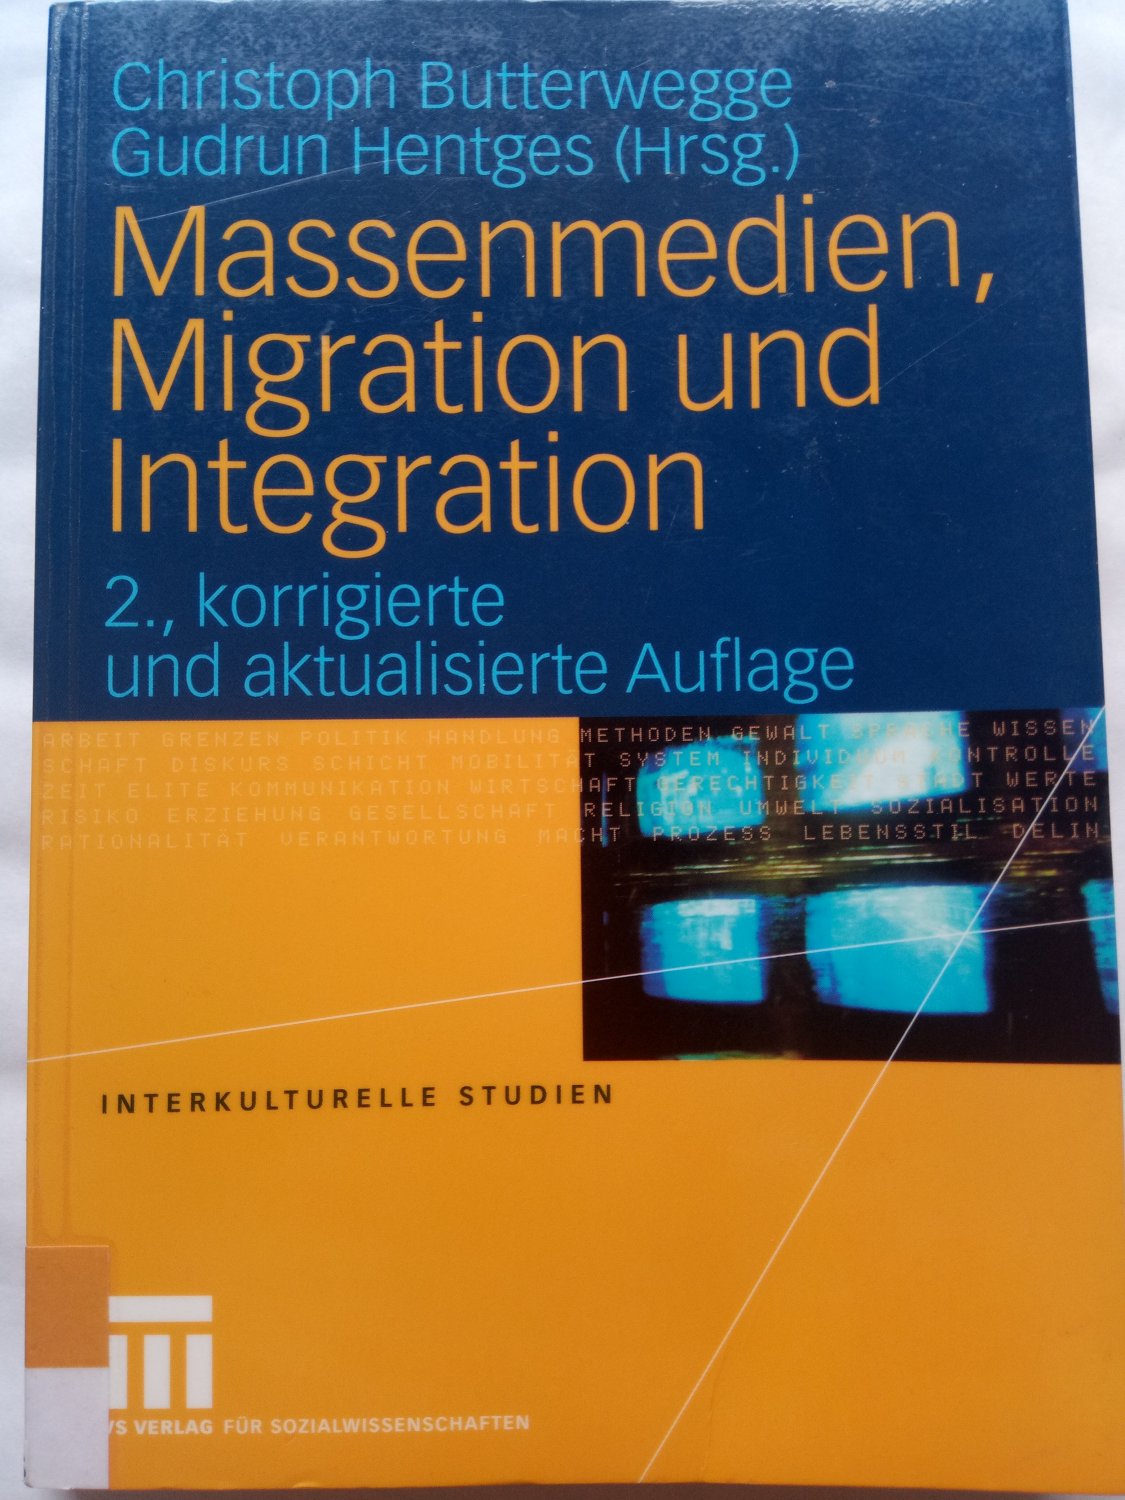 Massenmedien, Migration und Integration - Herausforderungen für Journalismus und politische Bildung - Butterwegge, Christoph; Hentges, Gudrun